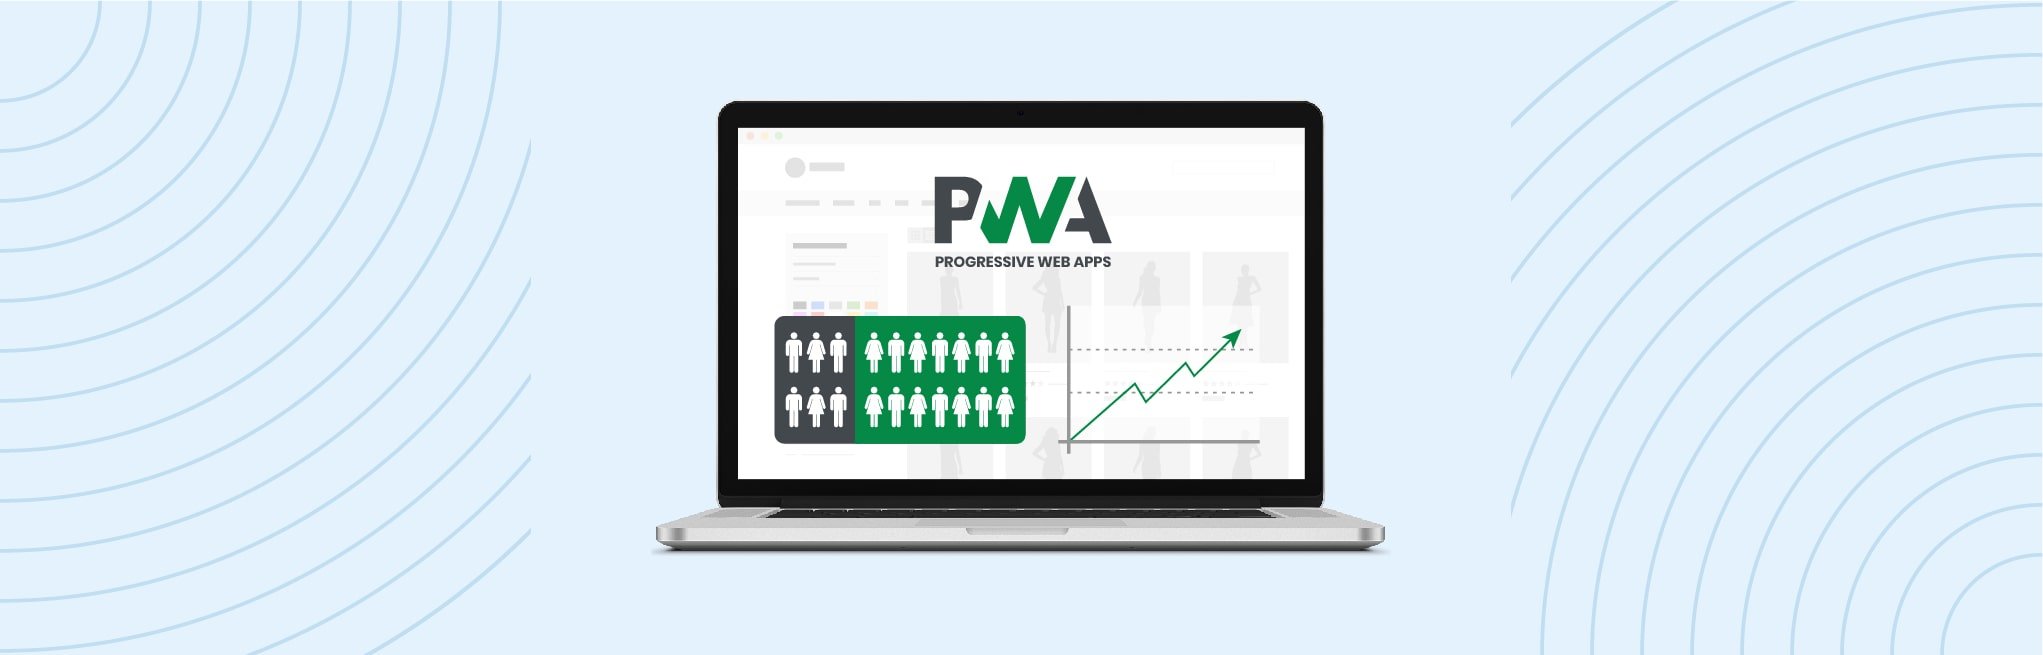 PWA statistics about conversion rate